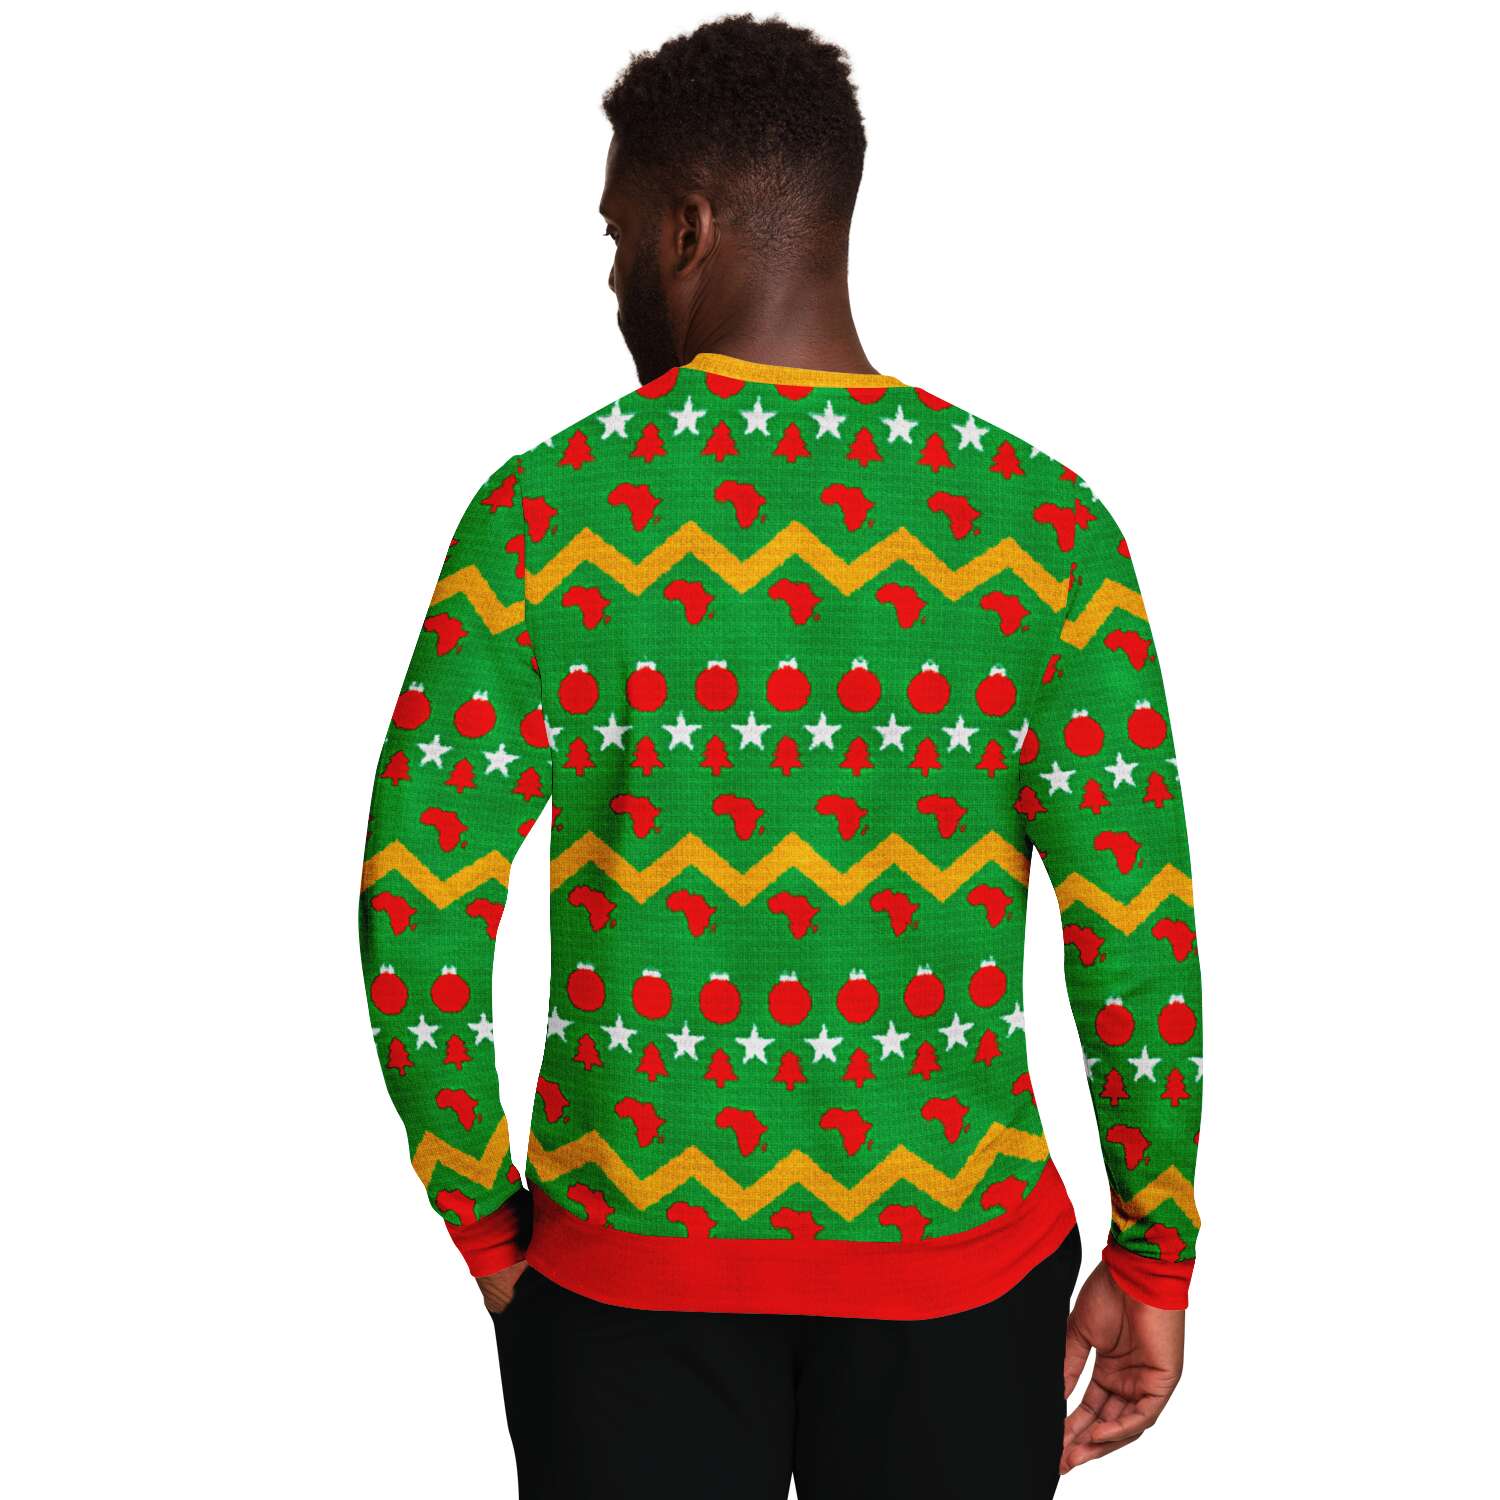 Ugly Sweatshirt - All I want for Christmas is Jollof